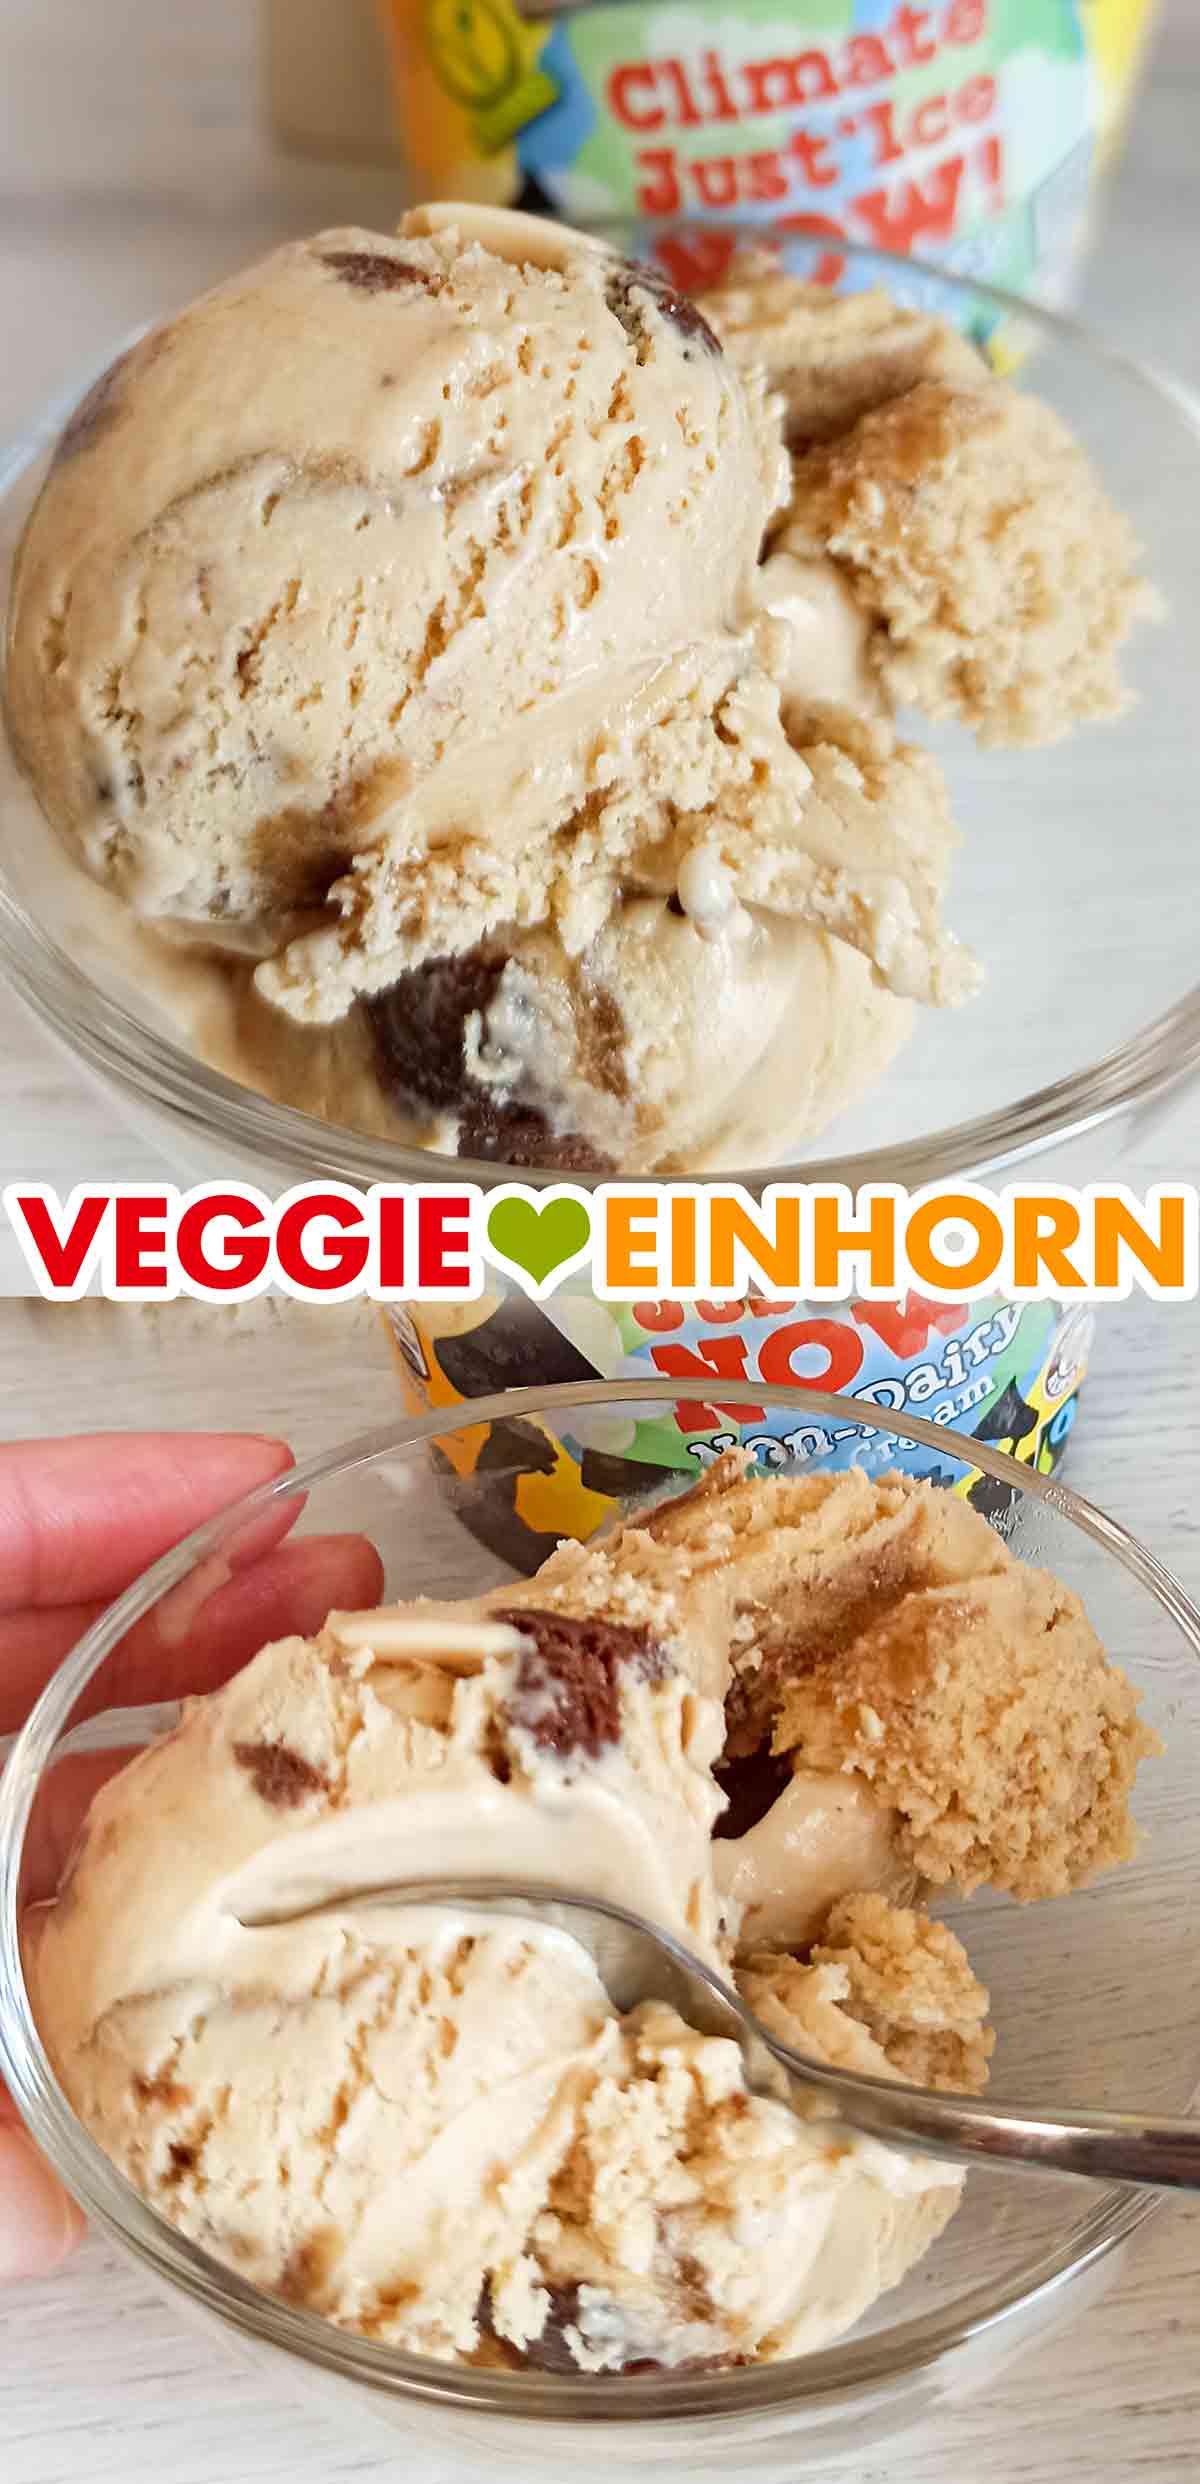 Vegane Eiscreme von Ben & Jerry's Climate Just'Ice Now in einem Dessertschälchen